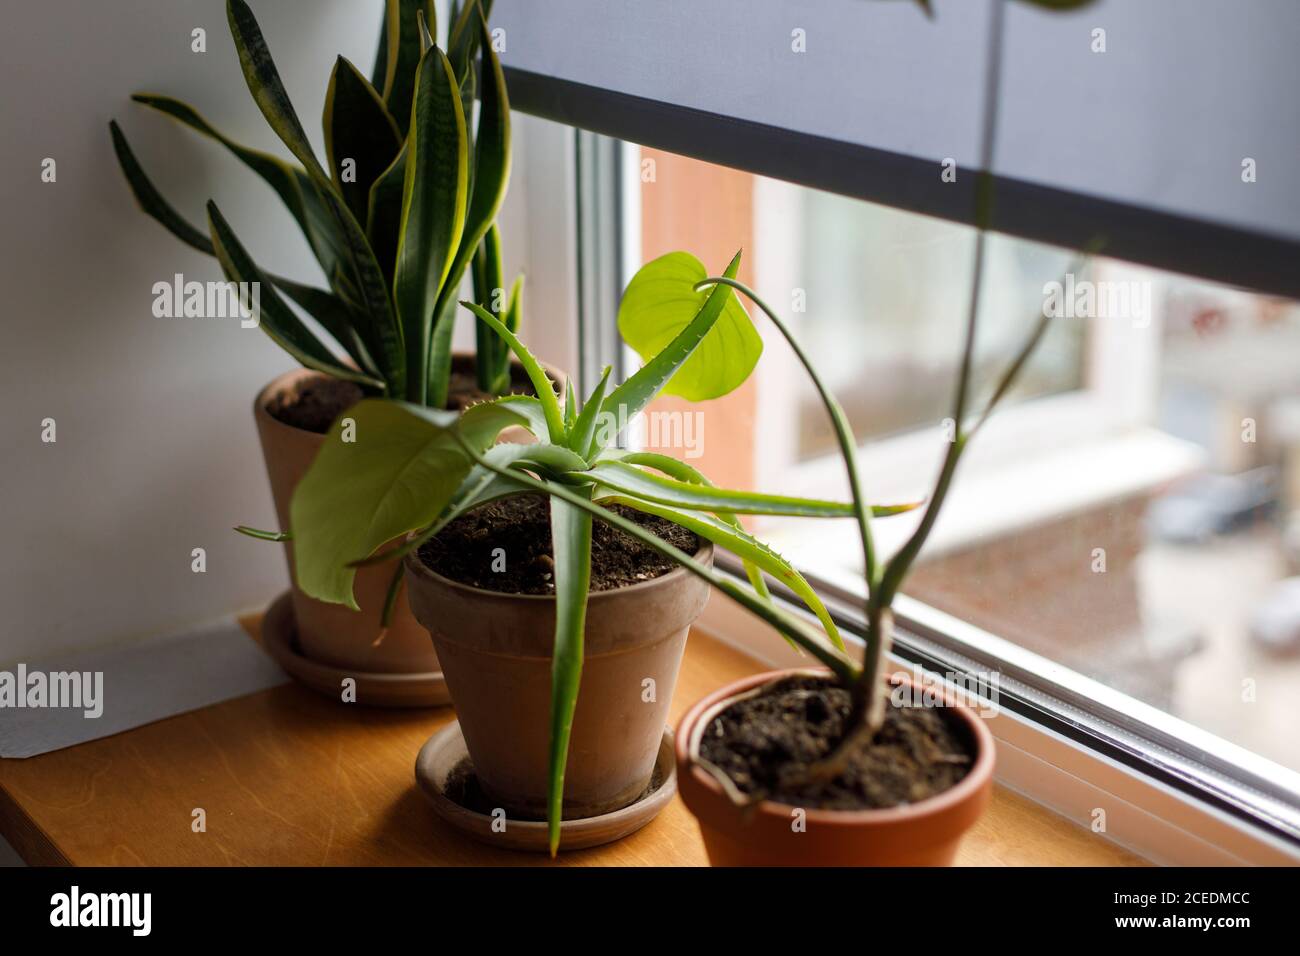 Pflanzen auf der Fensterbank. Schlangenpflanze, Aloe und Monstera grünen Pflanzen in Ton rustikalen Töpfen auf hölzernen Fensterbank auf Hintergrund der grauen Fenster Schatten. Housep Stockfoto